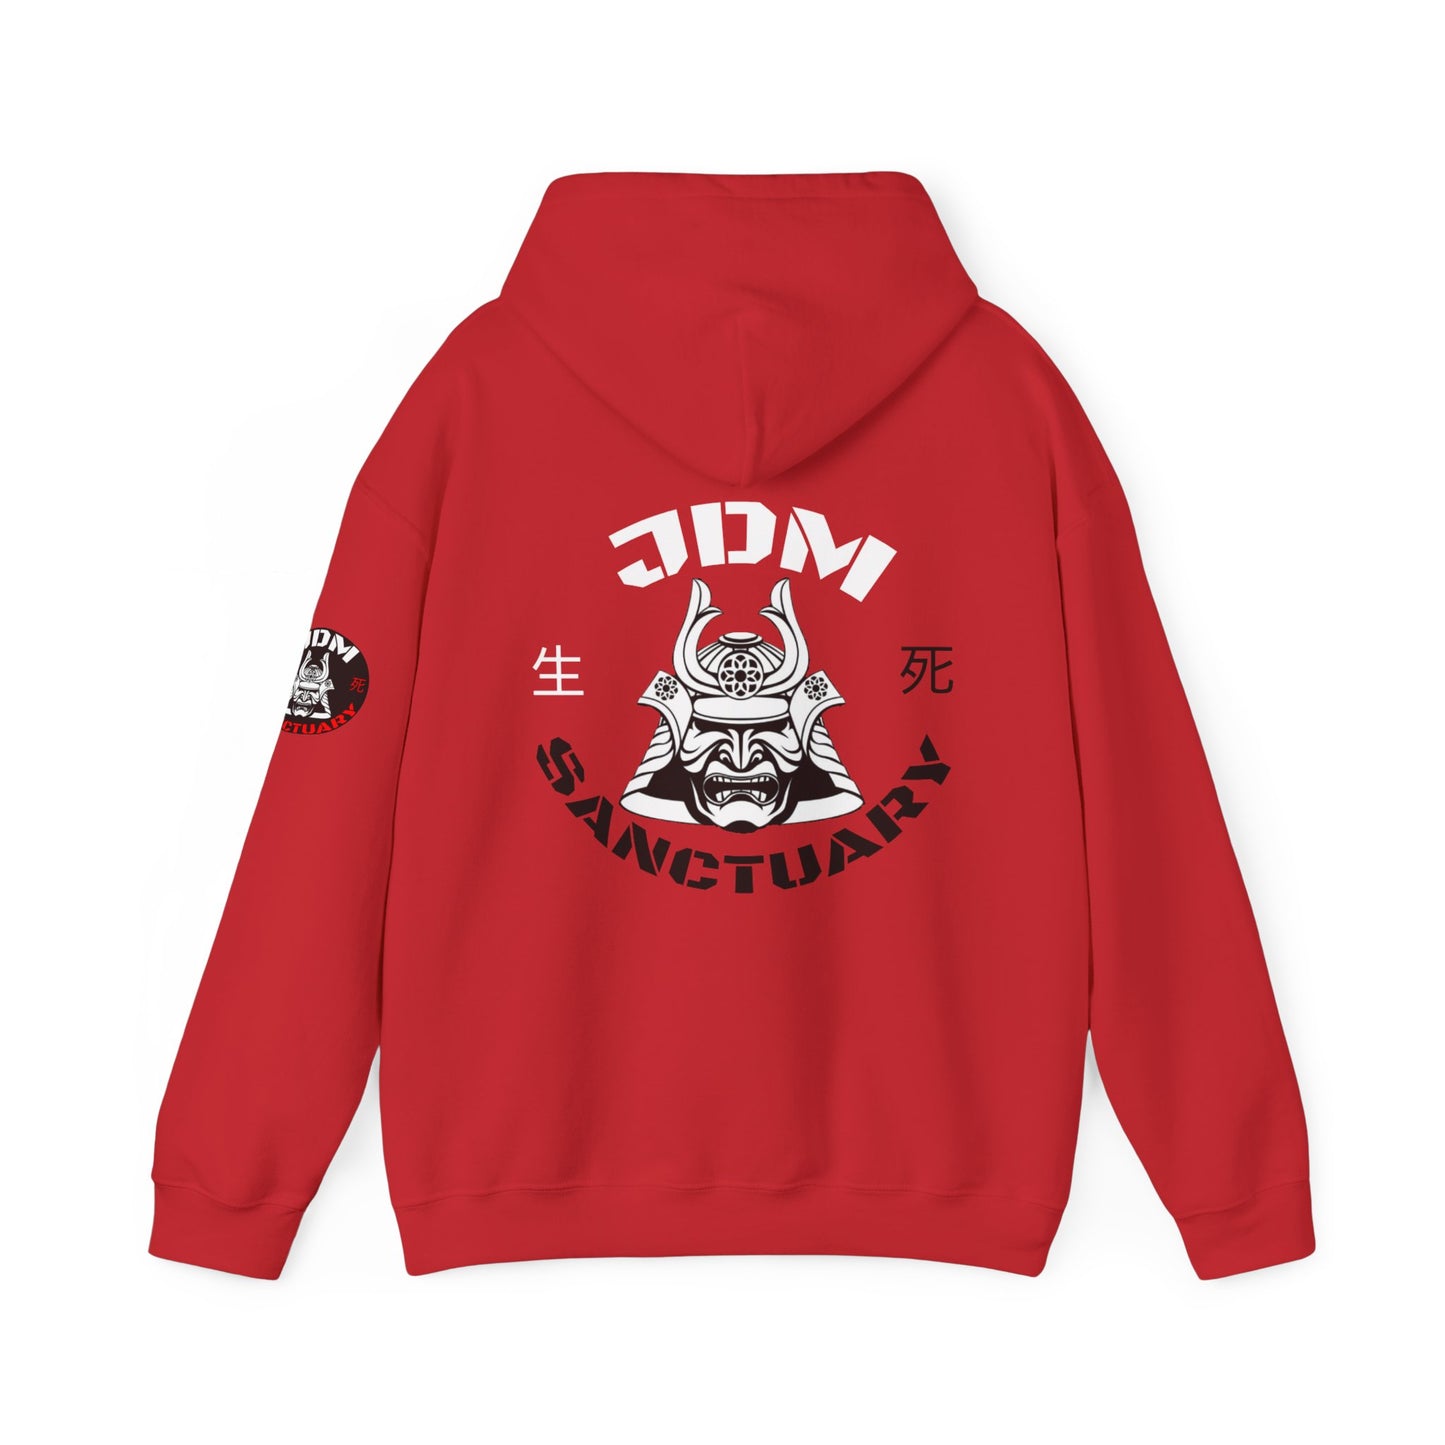 JDM Sanctuary hoodie